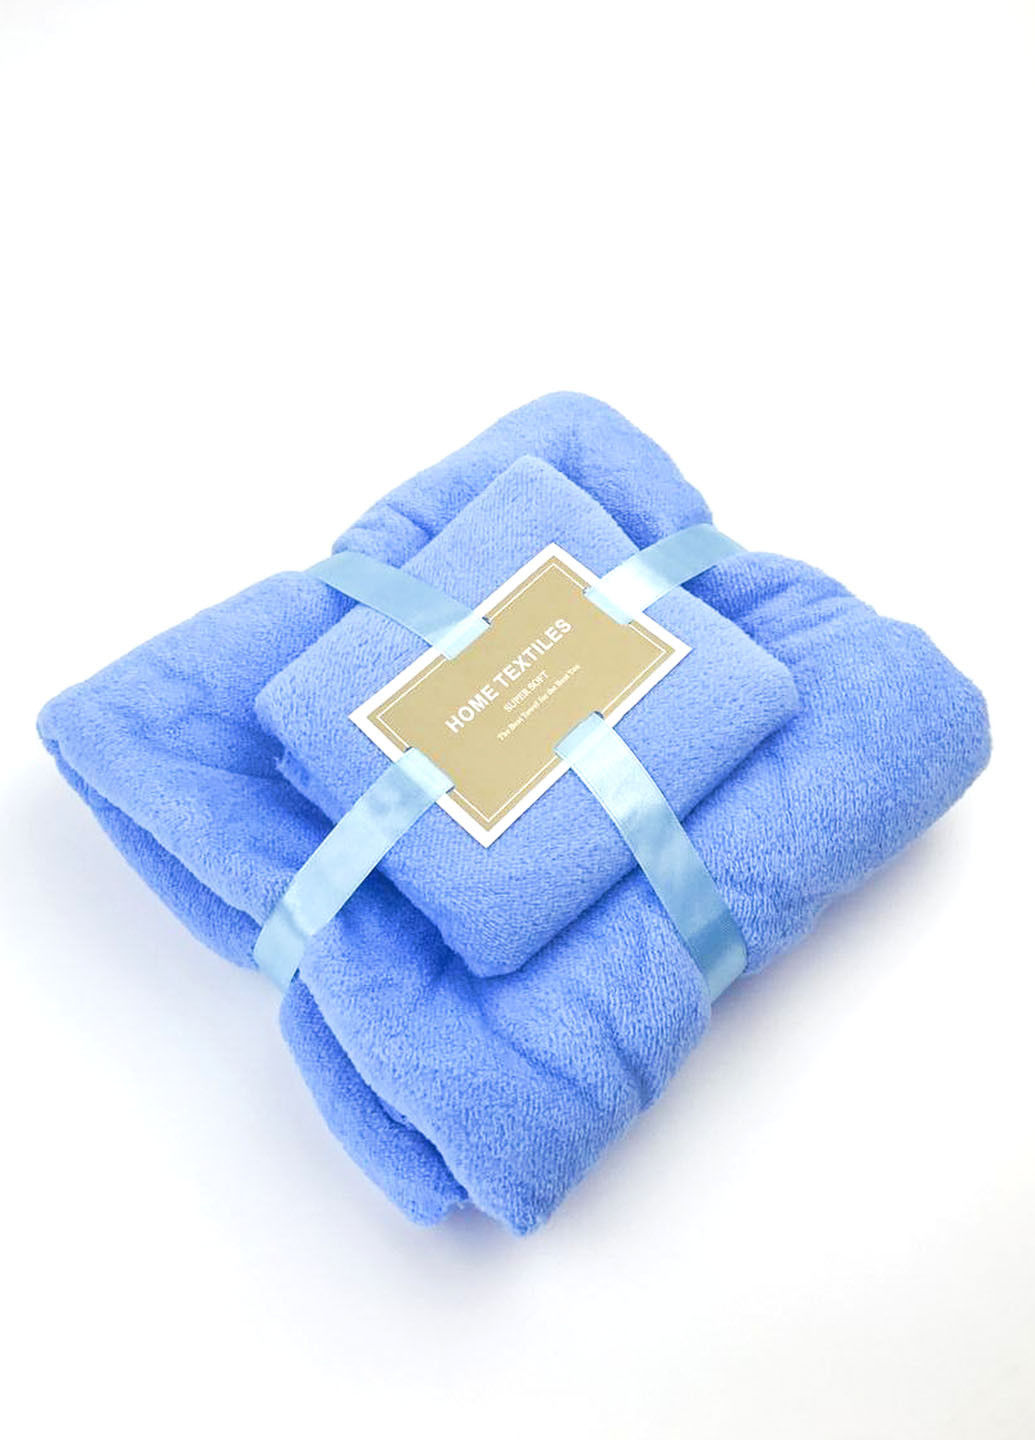 Homedec комплект однотонных полотенец 2 шт., микрофибра однотонный голубой производство - Турция